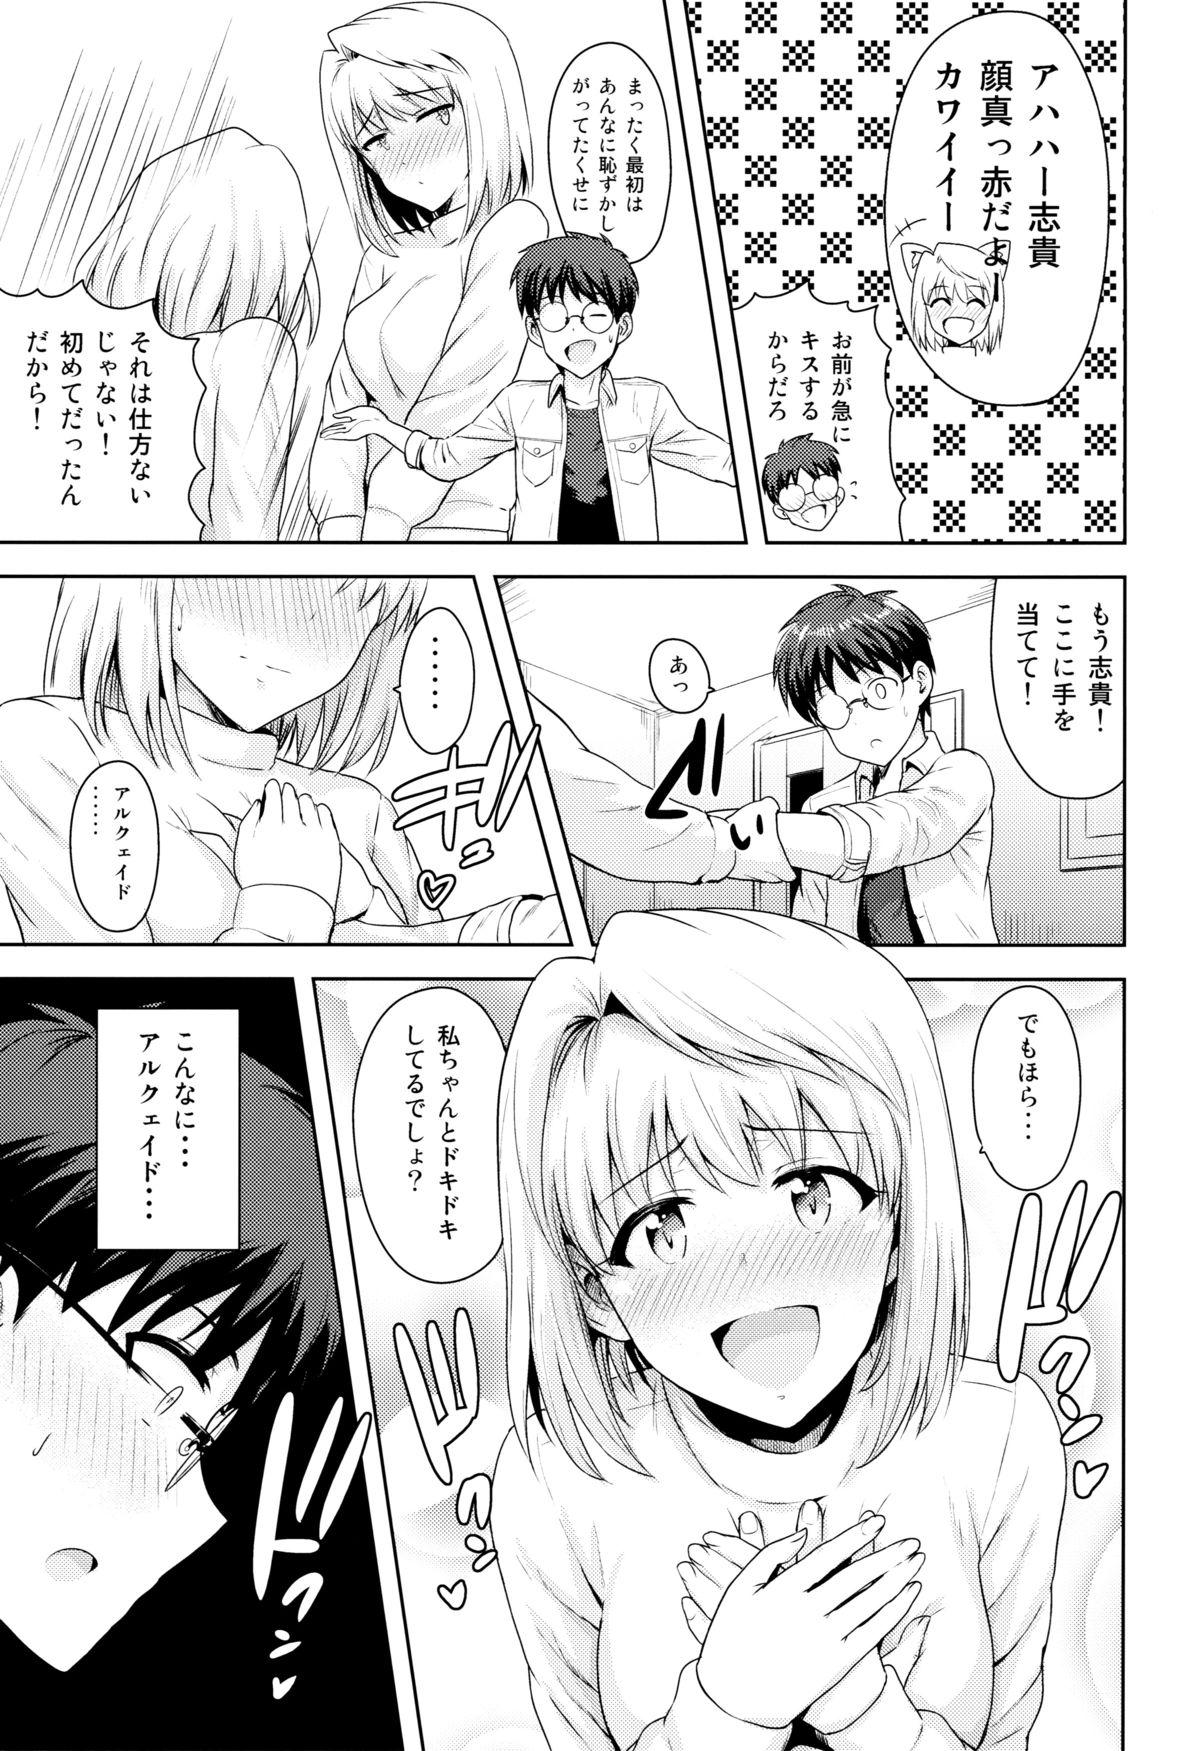 Loira Aru Hi no Futari - Tsukihime Time - Page 4